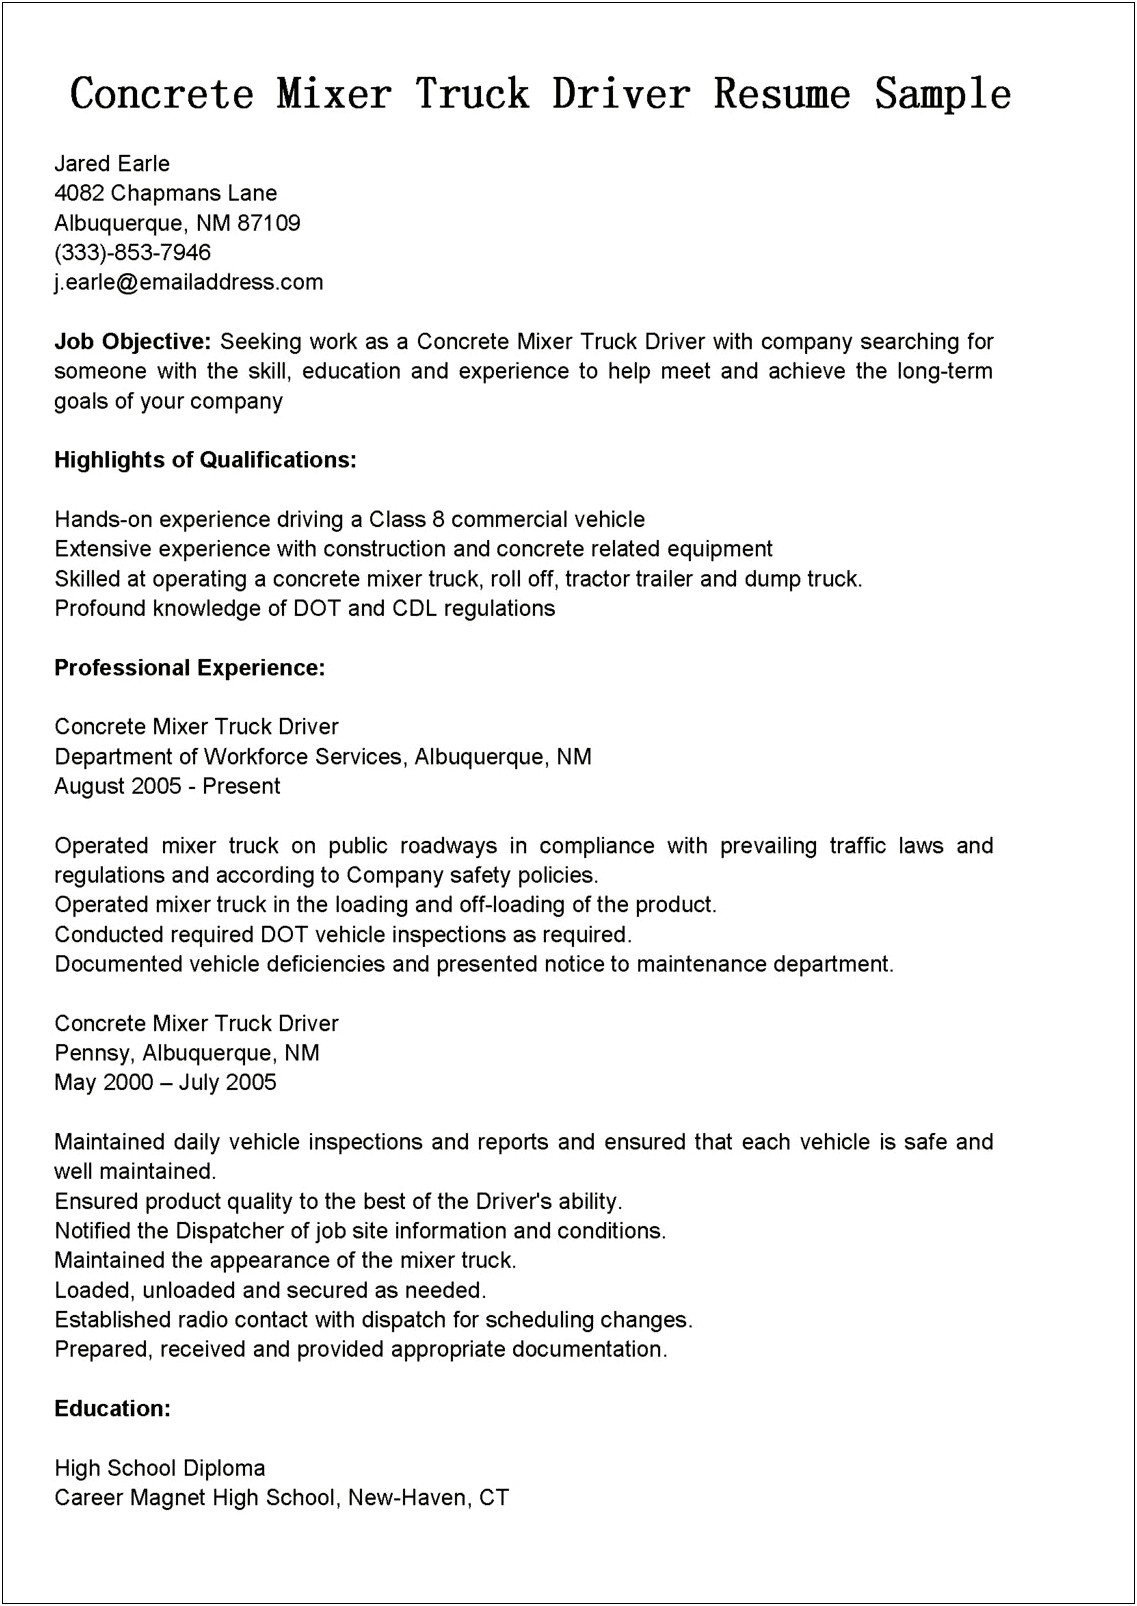 Concrete Construction Job Description Resume